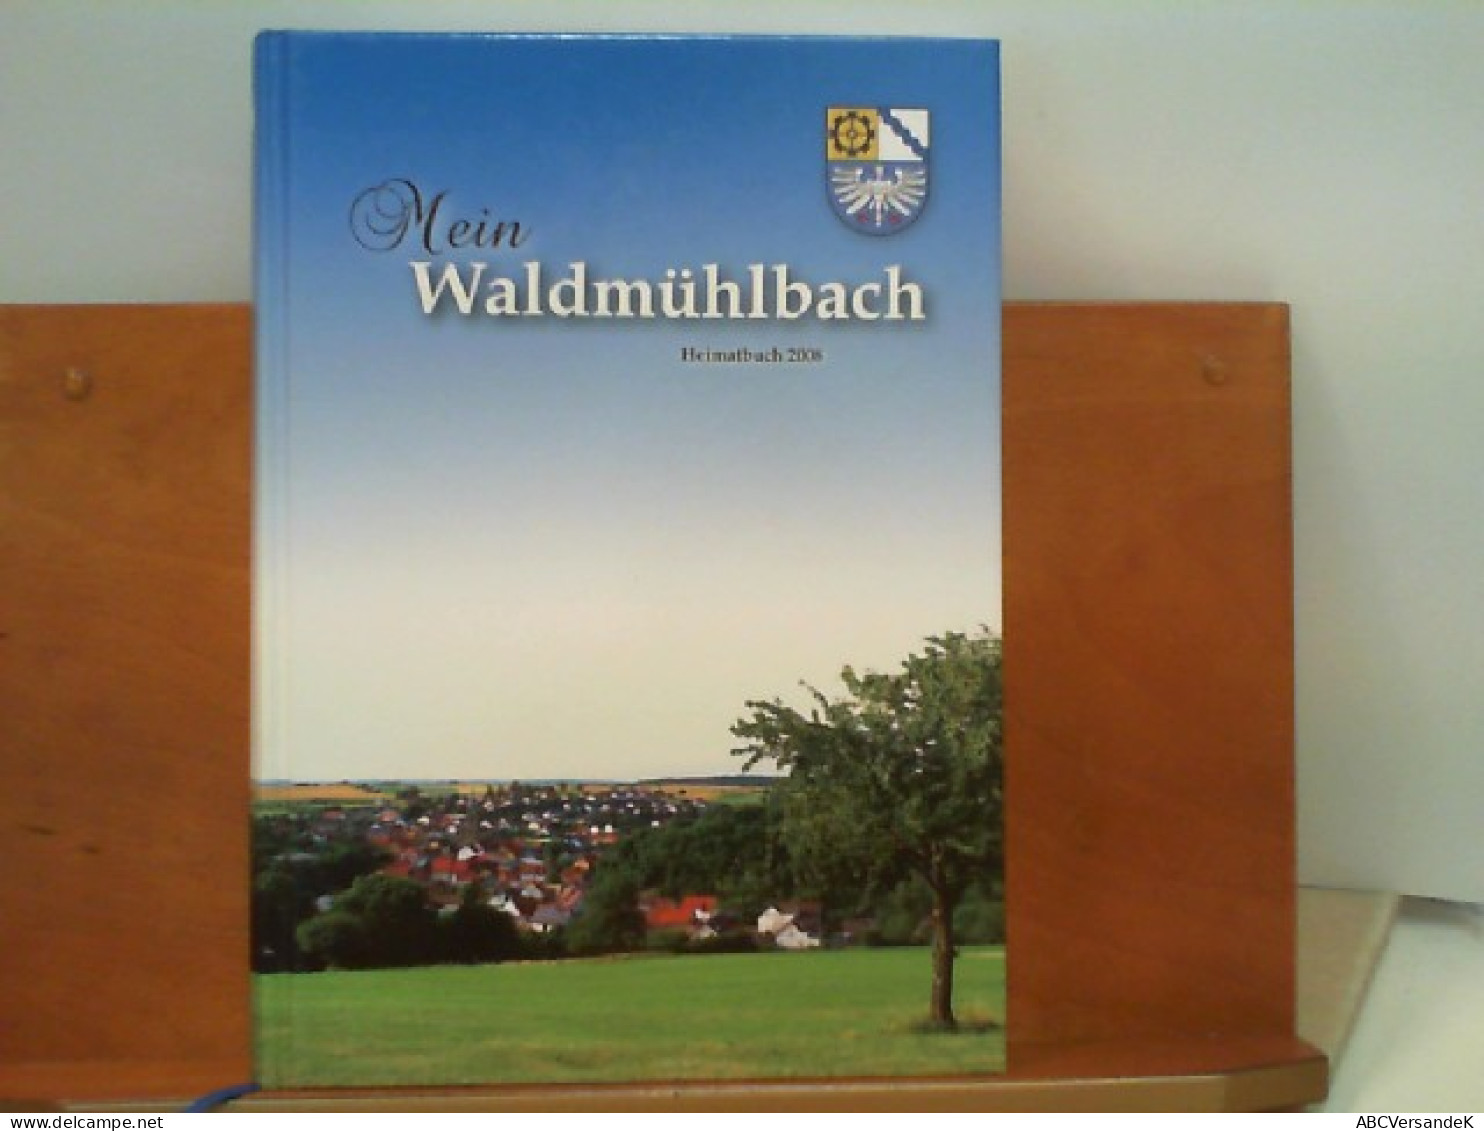 Mein Waldmühlbach - Heimatbuch 2008 - Germany (general)